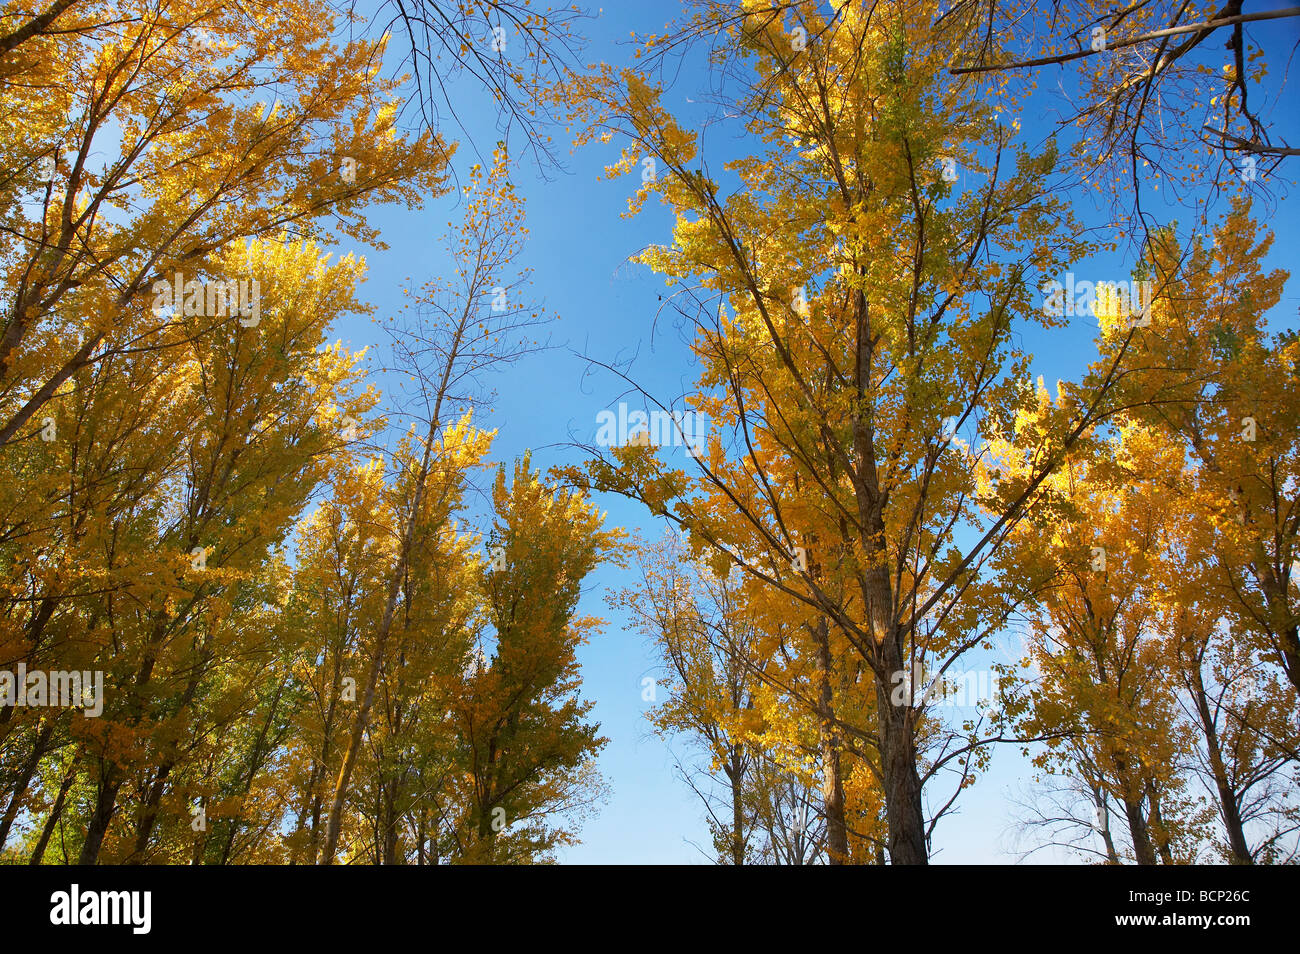 Les arbres d'automne à rampe de mise à l'aire de pique-nique par Khancoban Pondage montagnes enneigées du sud de la Nouvelle-Galles du Sud Australie Banque D'Images